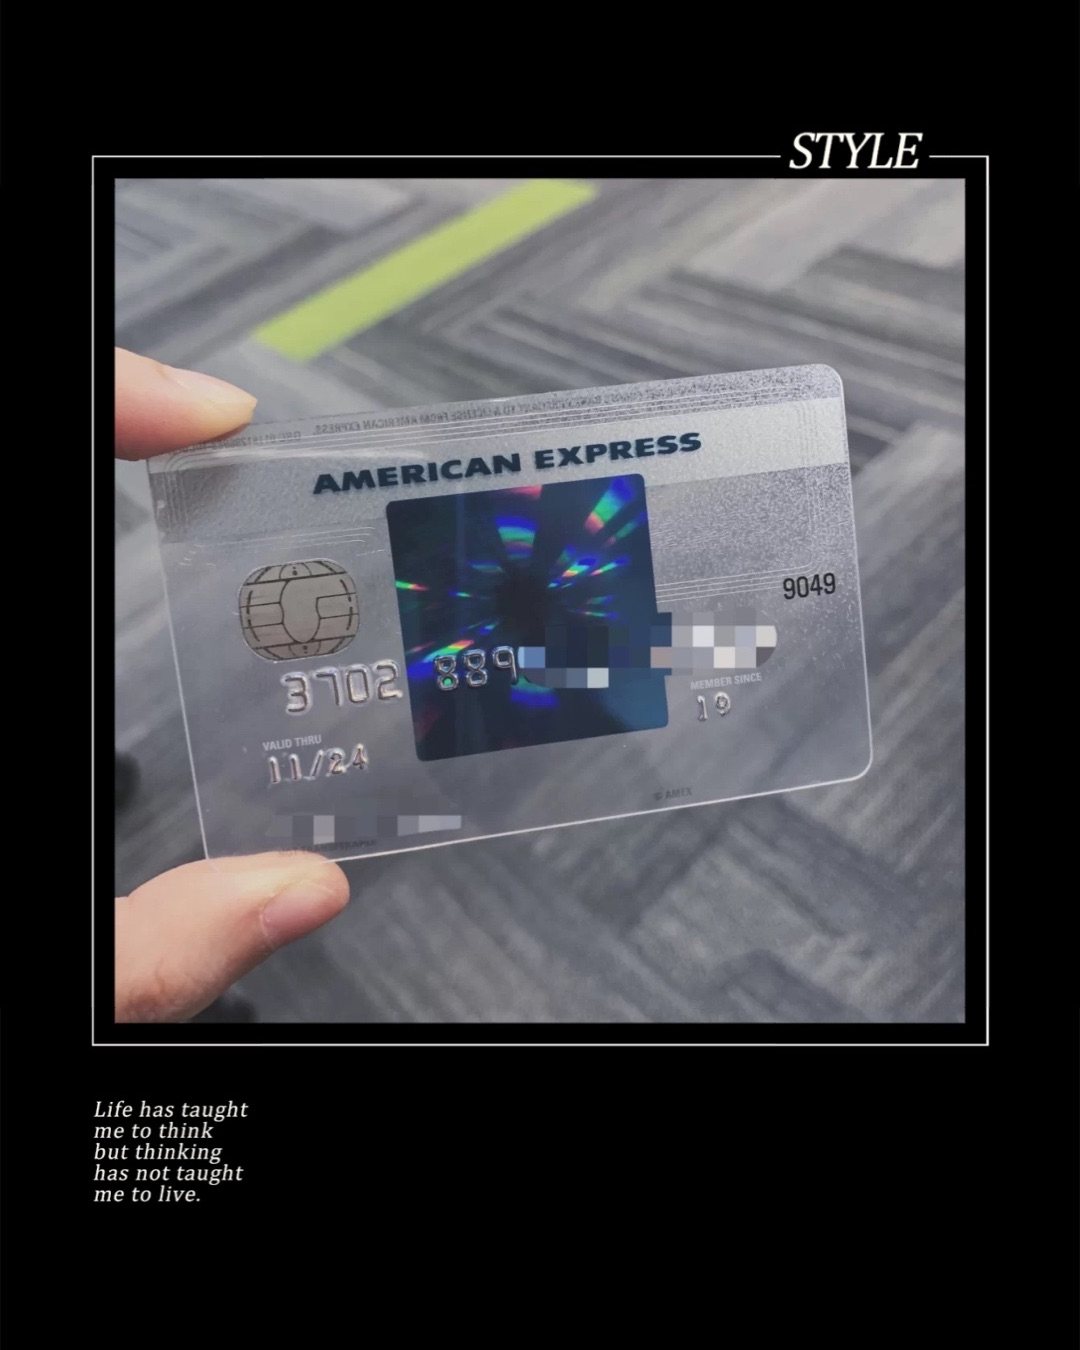 美国运通卡我**5 美国招行的AE blue全币种国际信用卡